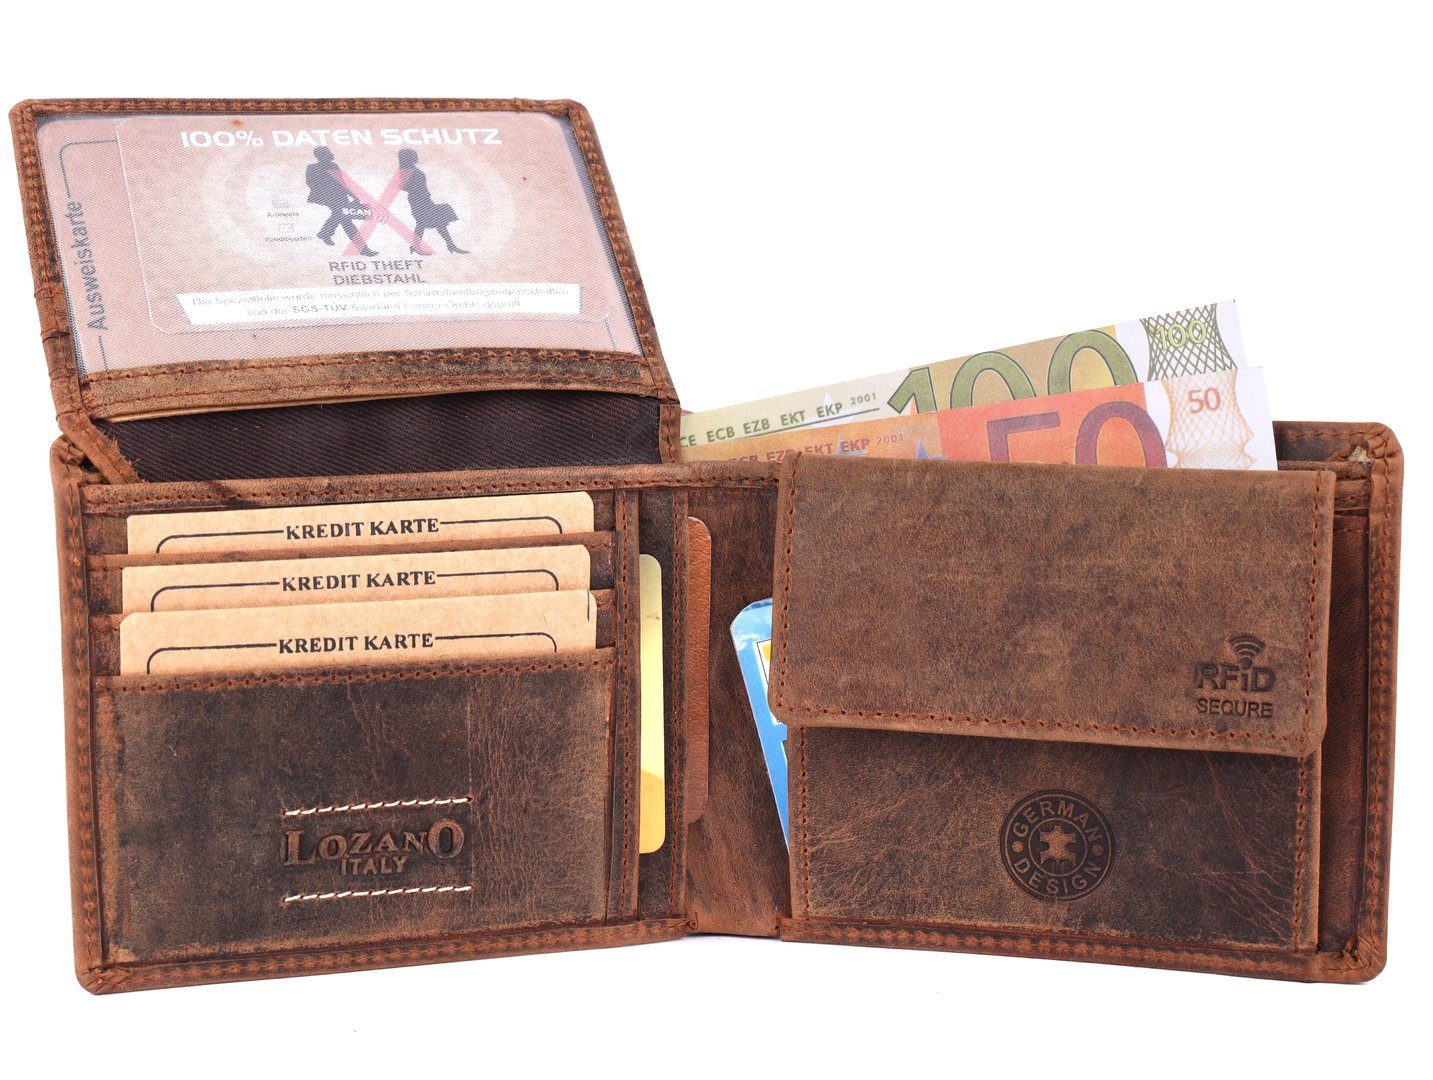 Portemonnaie, Börse mit Männerbörse Herren Brieftasche Münzfach SHG Geldbörse RFID Büffelleder Leder Schutz Lederbörse